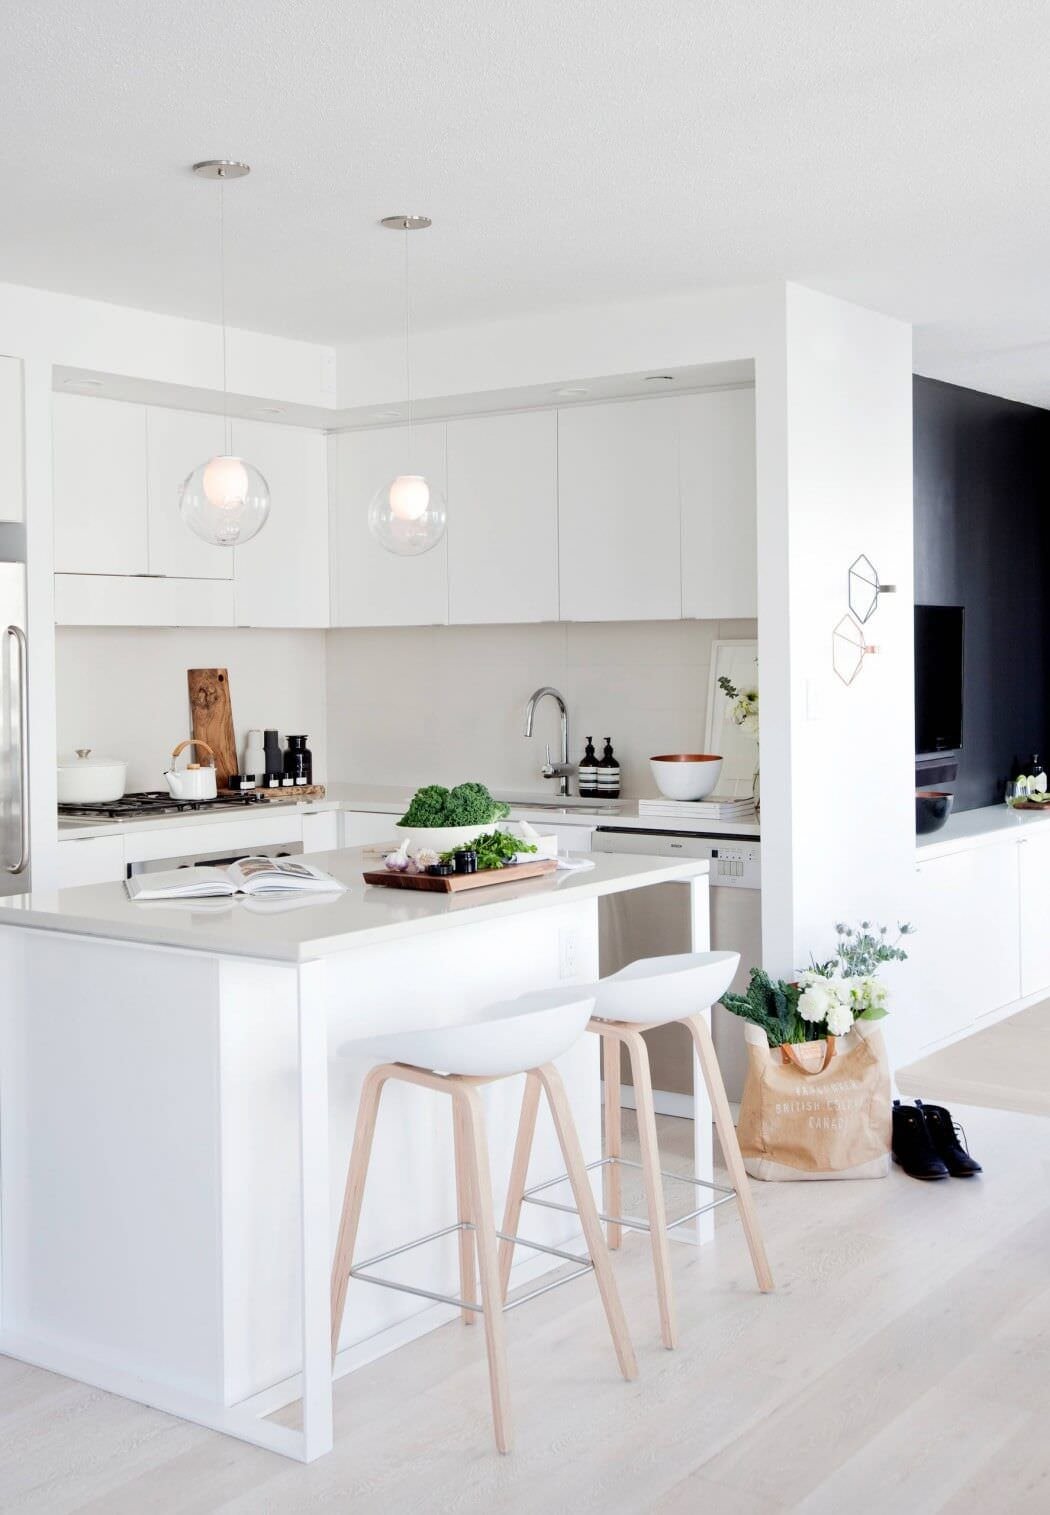 Cucina piccola angolare, stile moderno, con mobili in legno laccato bianco. Una piccola isola delimita l’ambito in modo elegante e funzionale. Idee cucine open space.